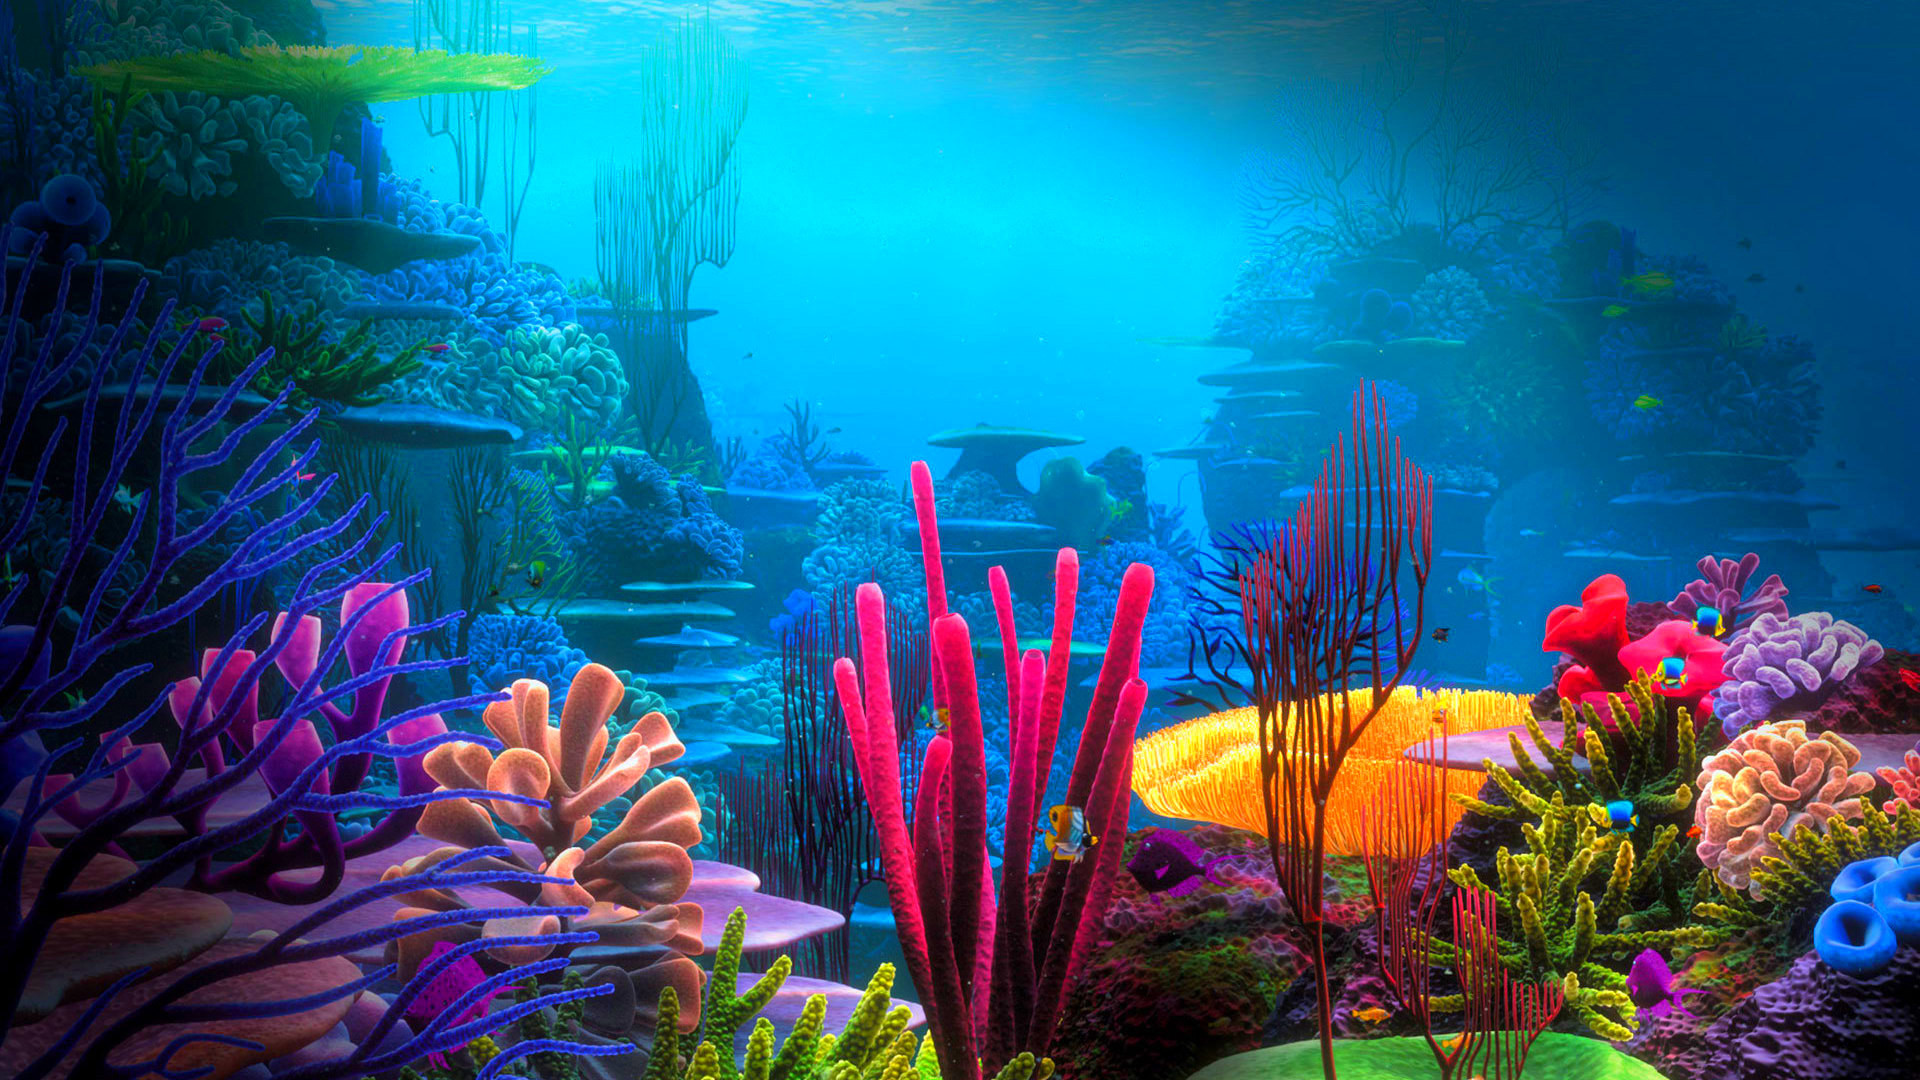 live wallpaper sott'acqua,natura,subacqueo,barriera corallina,acquario d'acqua dolce,scogliera